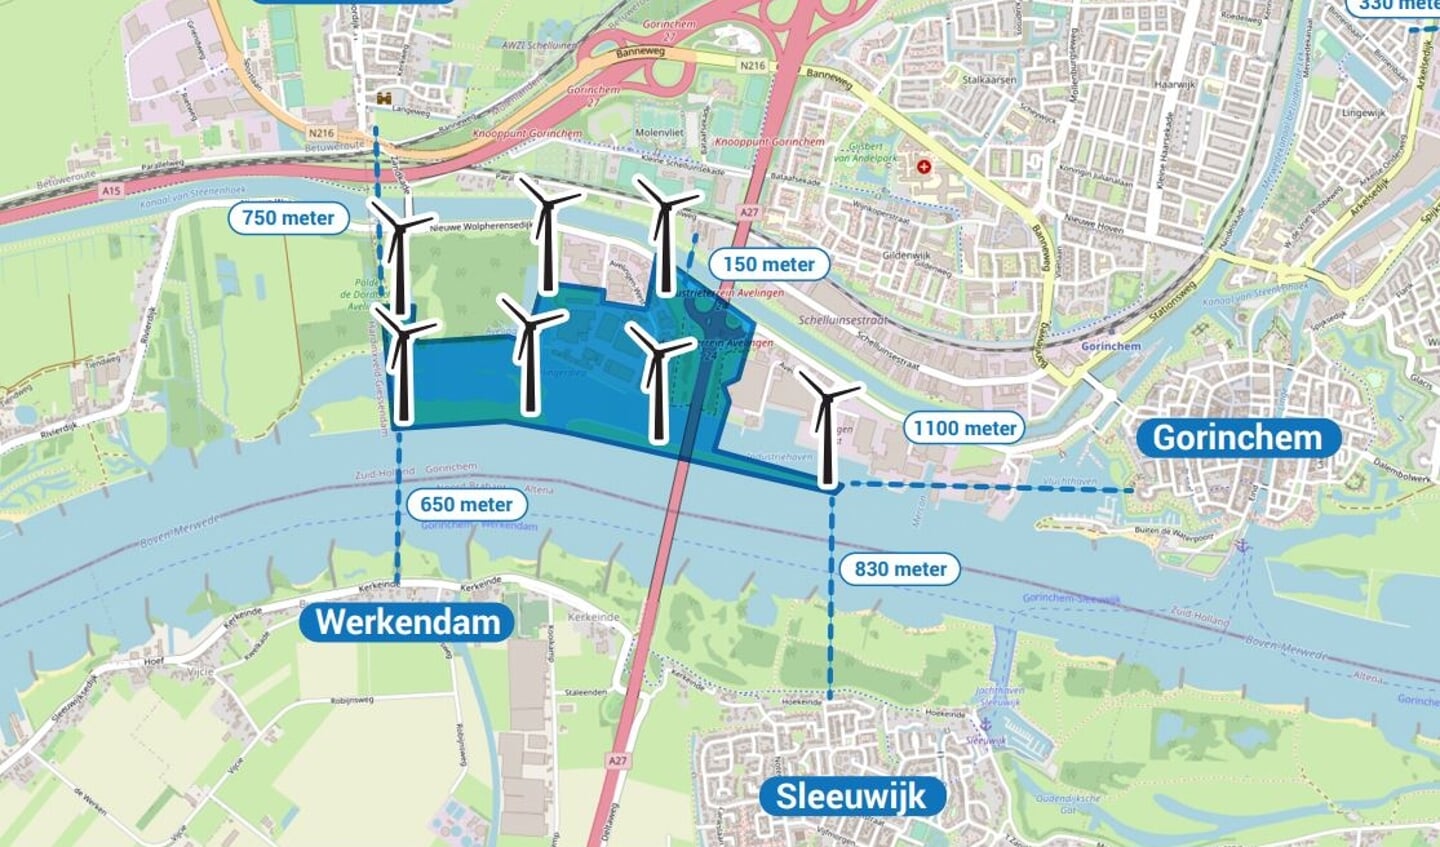 De windmolens ingetekend op de plattegrond van Gorinchem